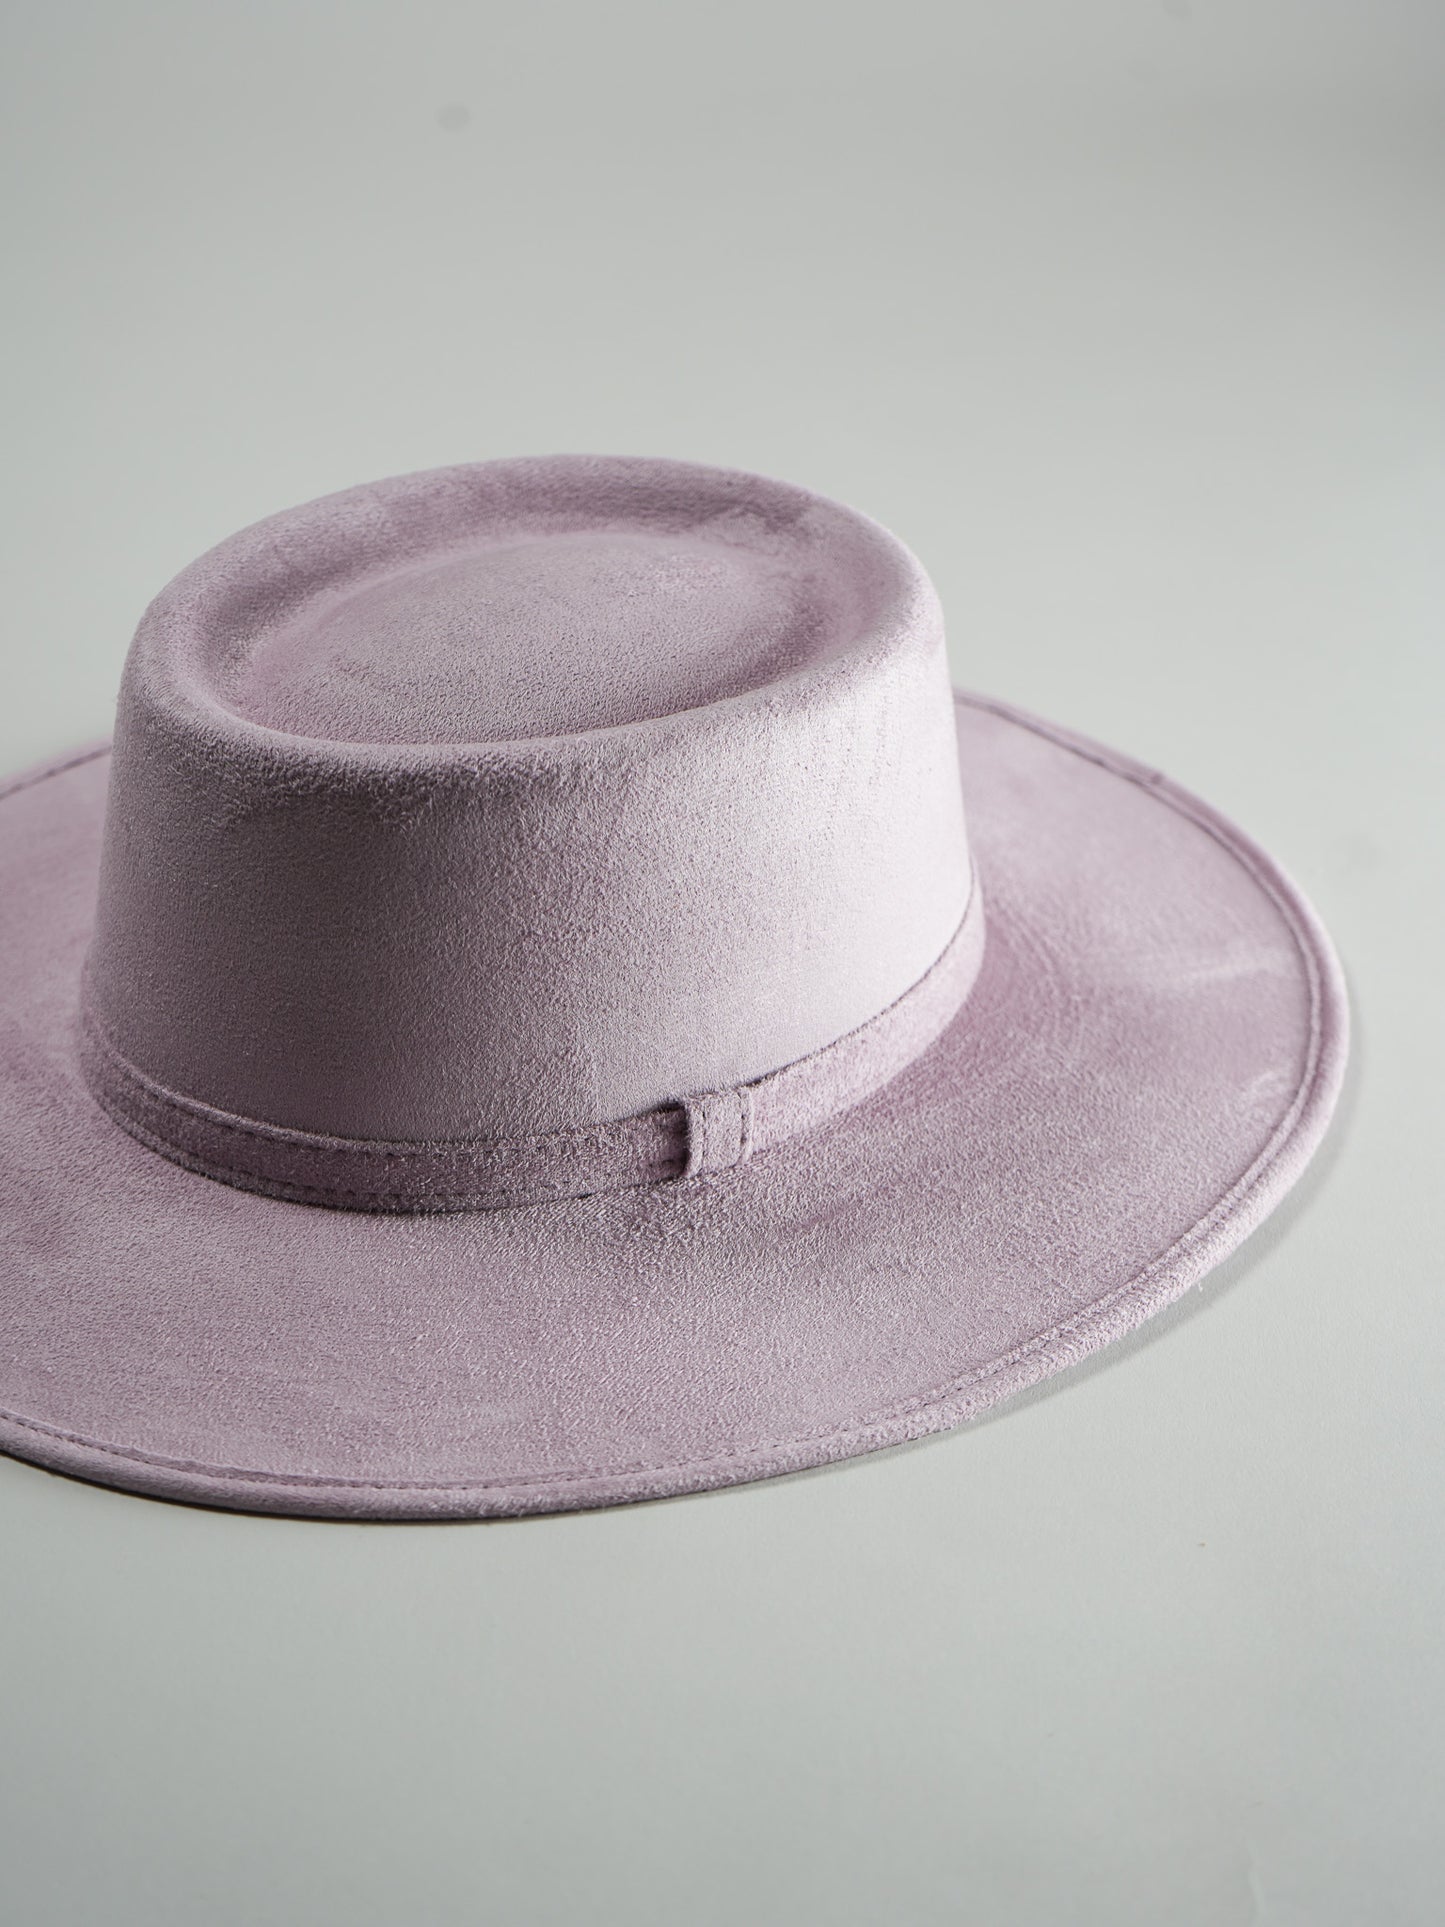 Vegan Suede Boater Hat- Lavender